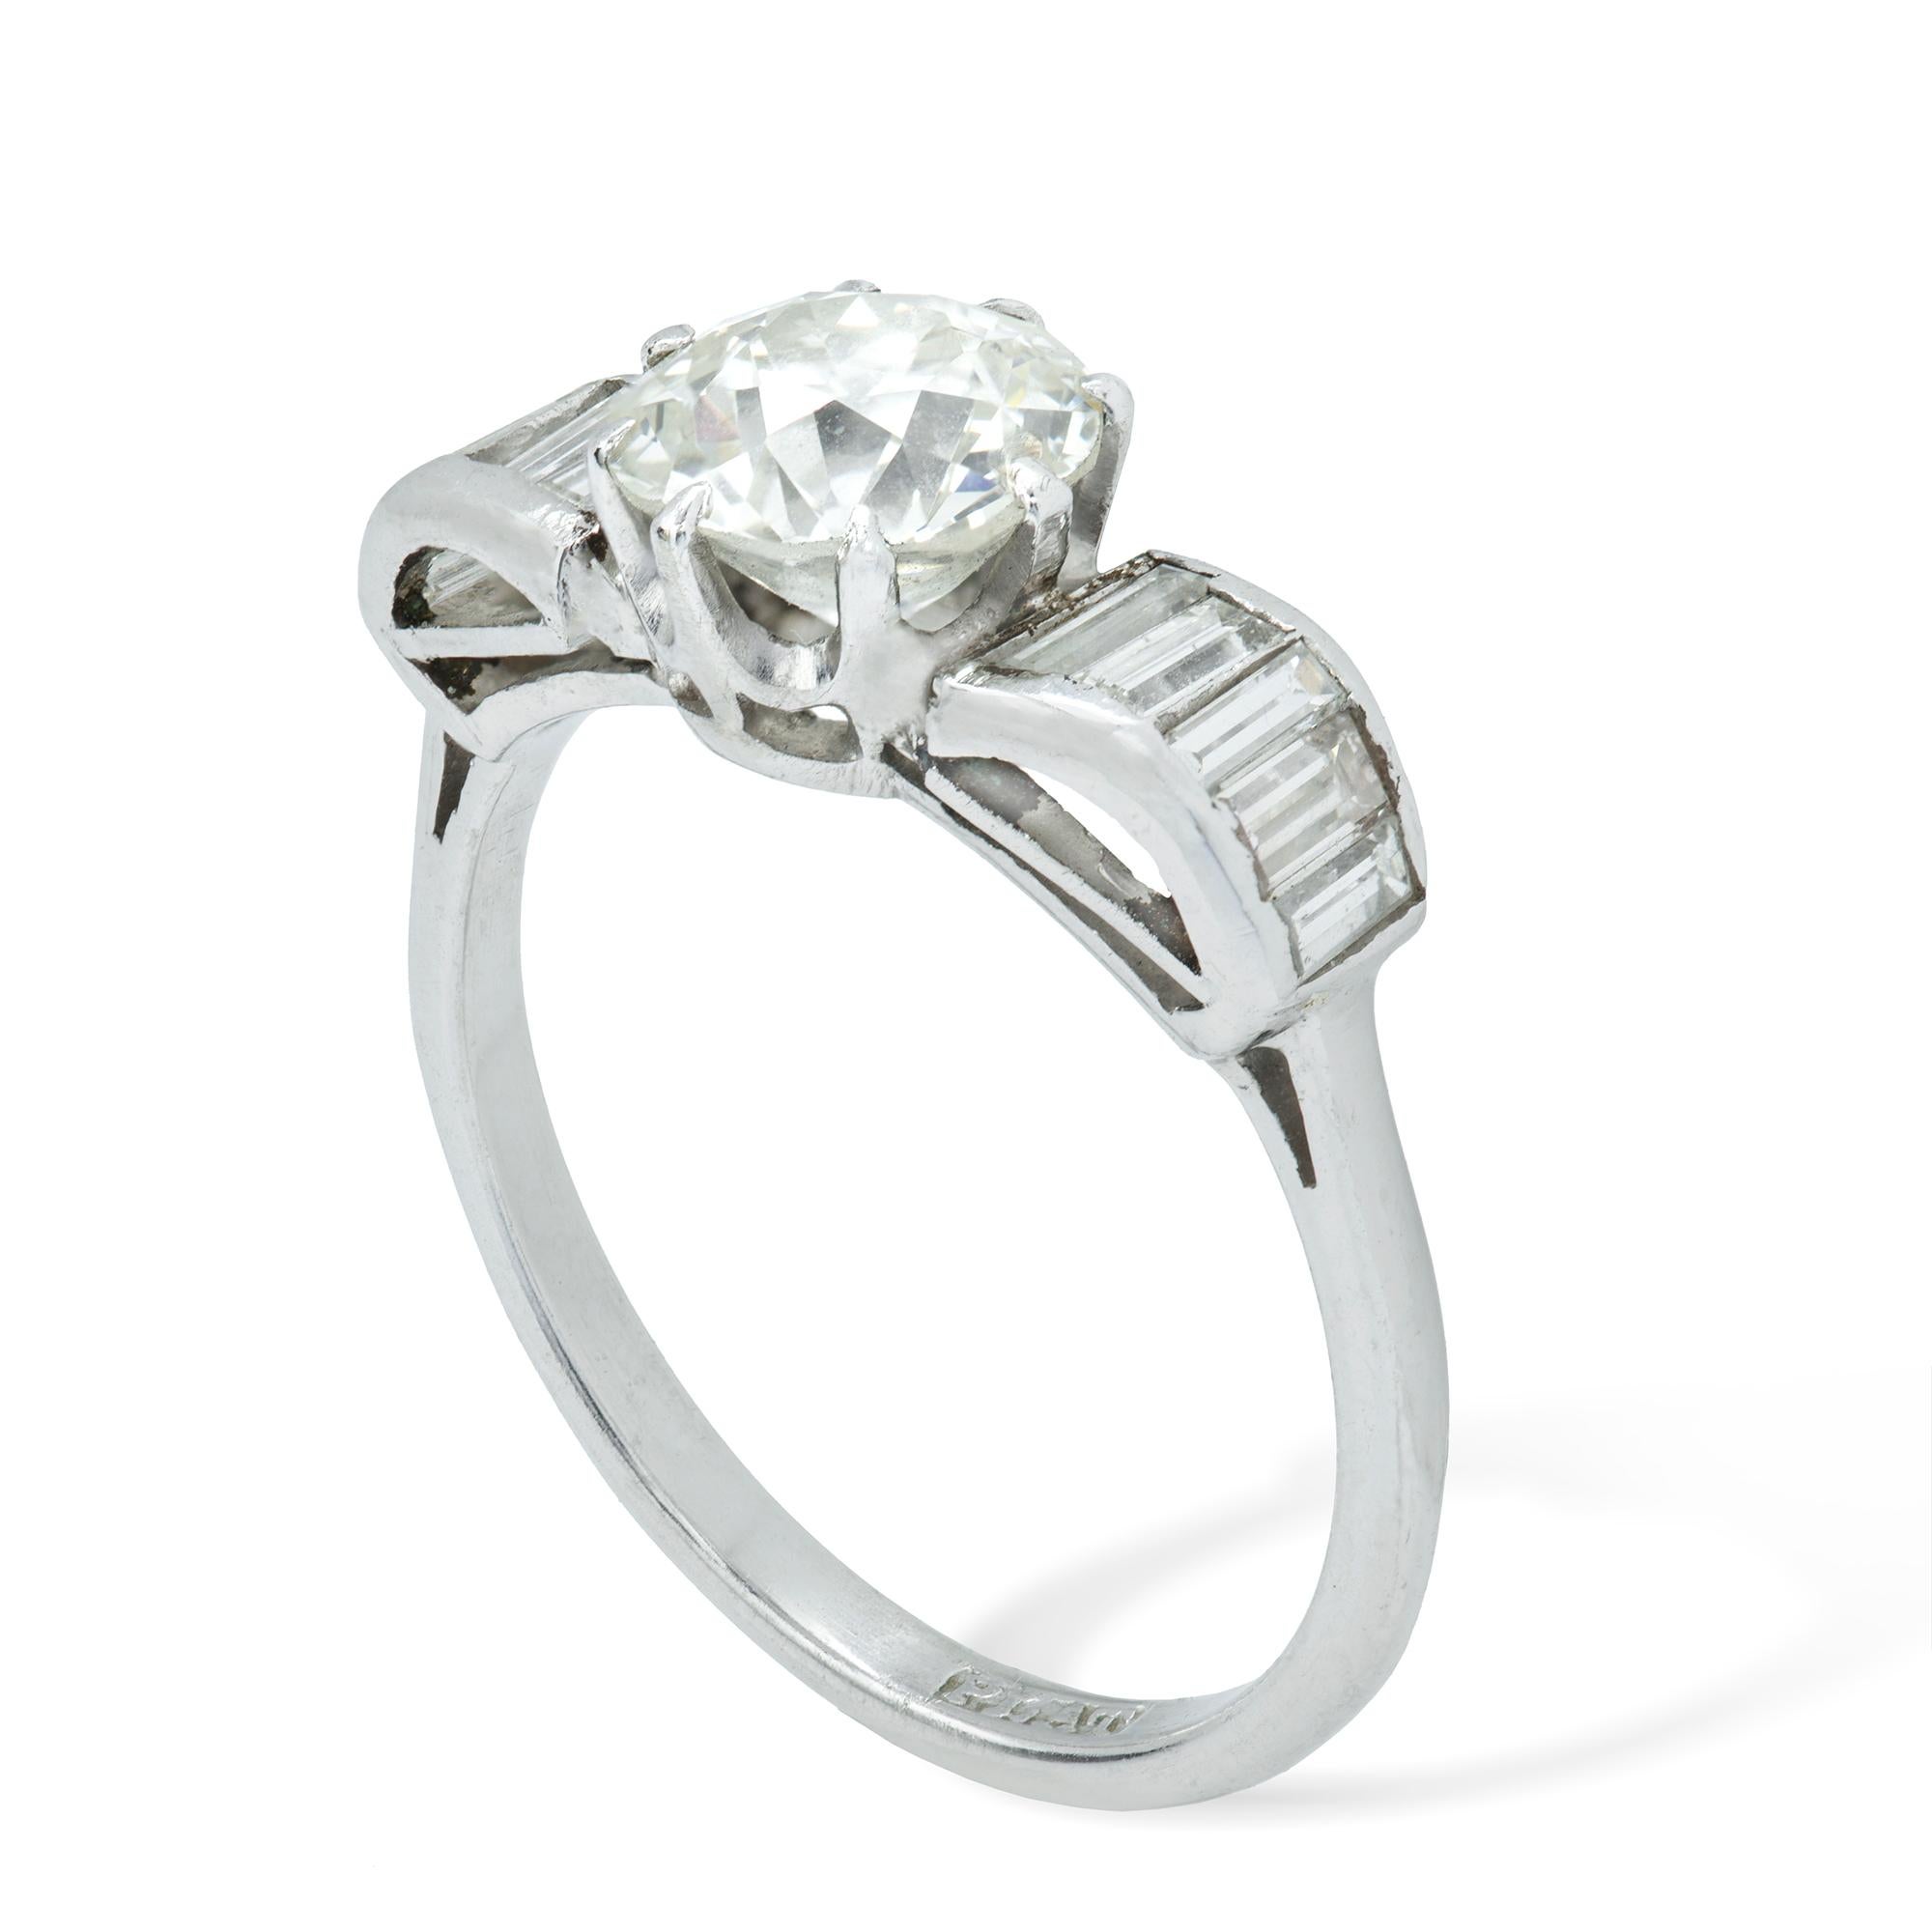 Bague en diamant Art Deco, le diamant central de taille européenne pesant 1,41 carats, accompagné d'un rapport GCS indiquant qu'il est de couleur K et de pureté SI2, huit griffes montées sur un collier en platine, cinq diamants baguettes gradués sur